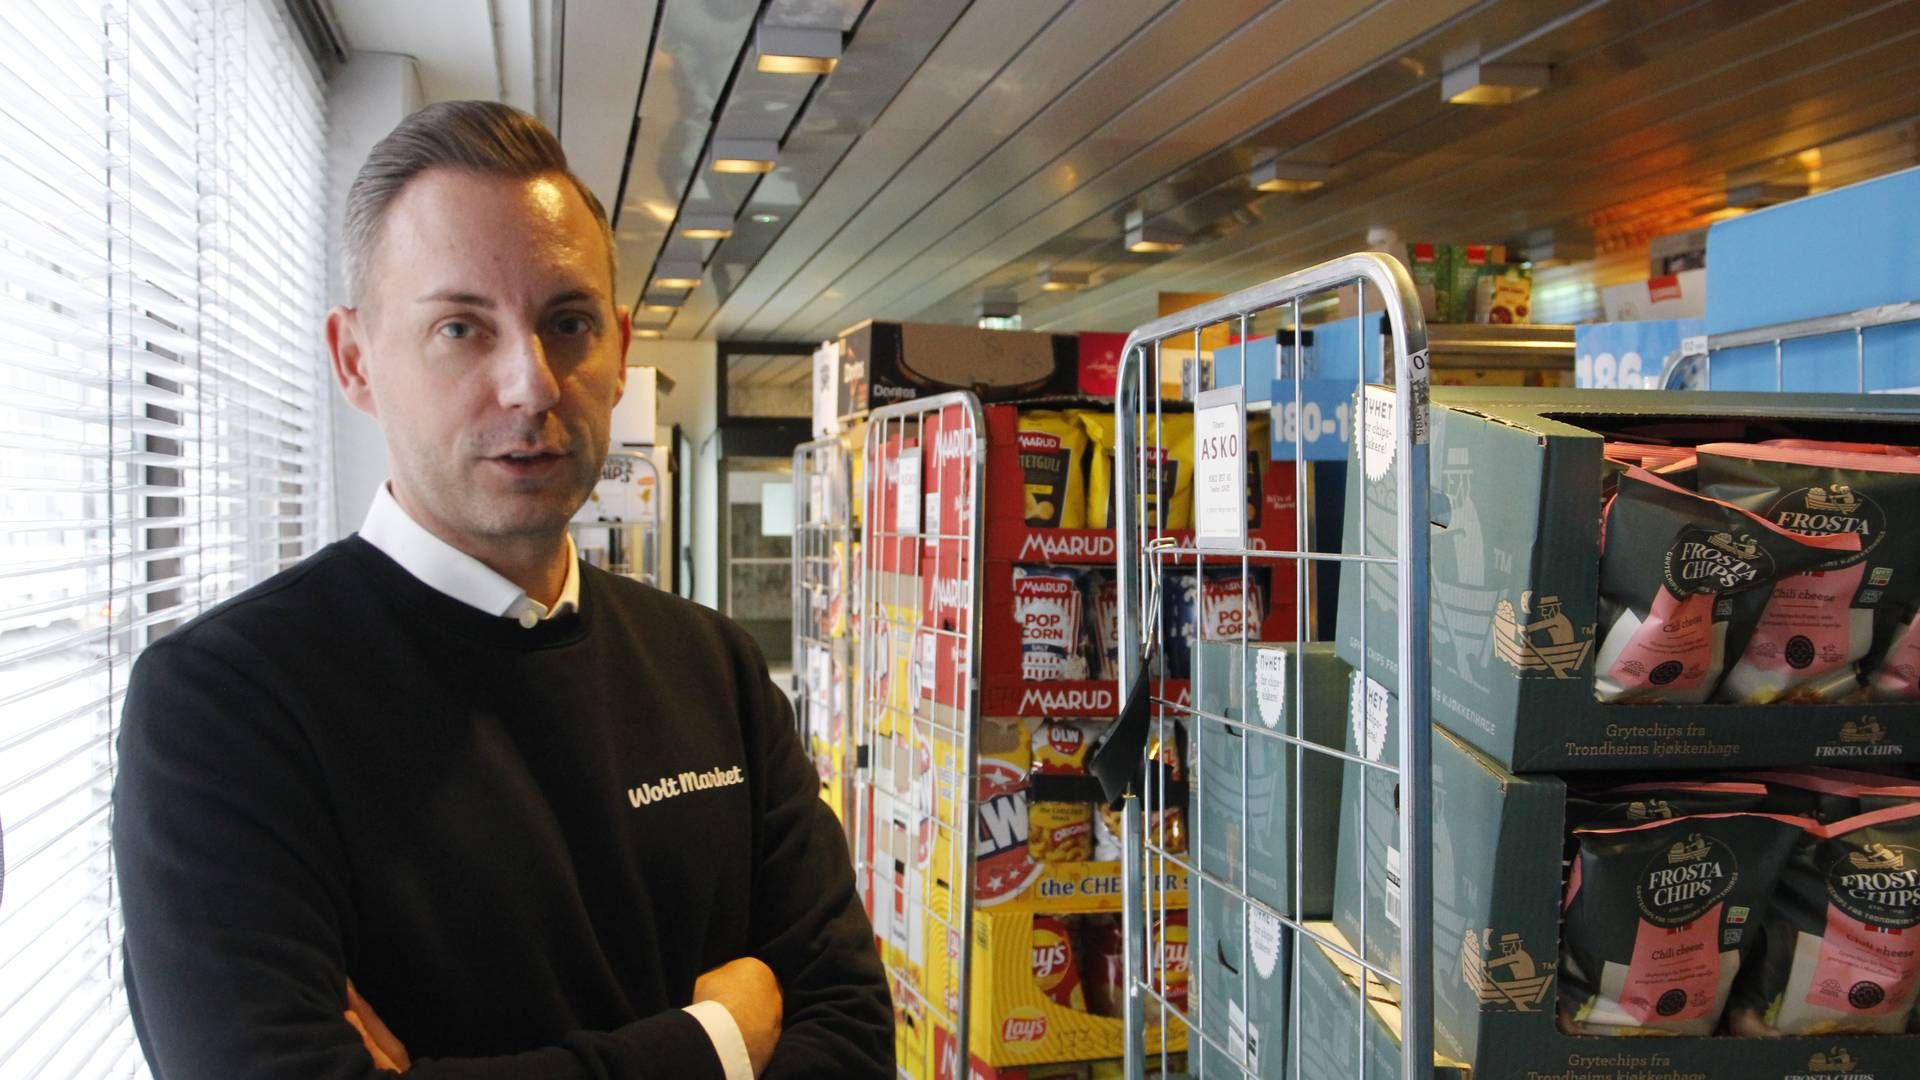 I tillegg Wolt som leveranseaktør, har Wolt Market egne butikker for dagligvarehandel som ledes av Joachim Schwartzbach. | Foto: Øystein Engh